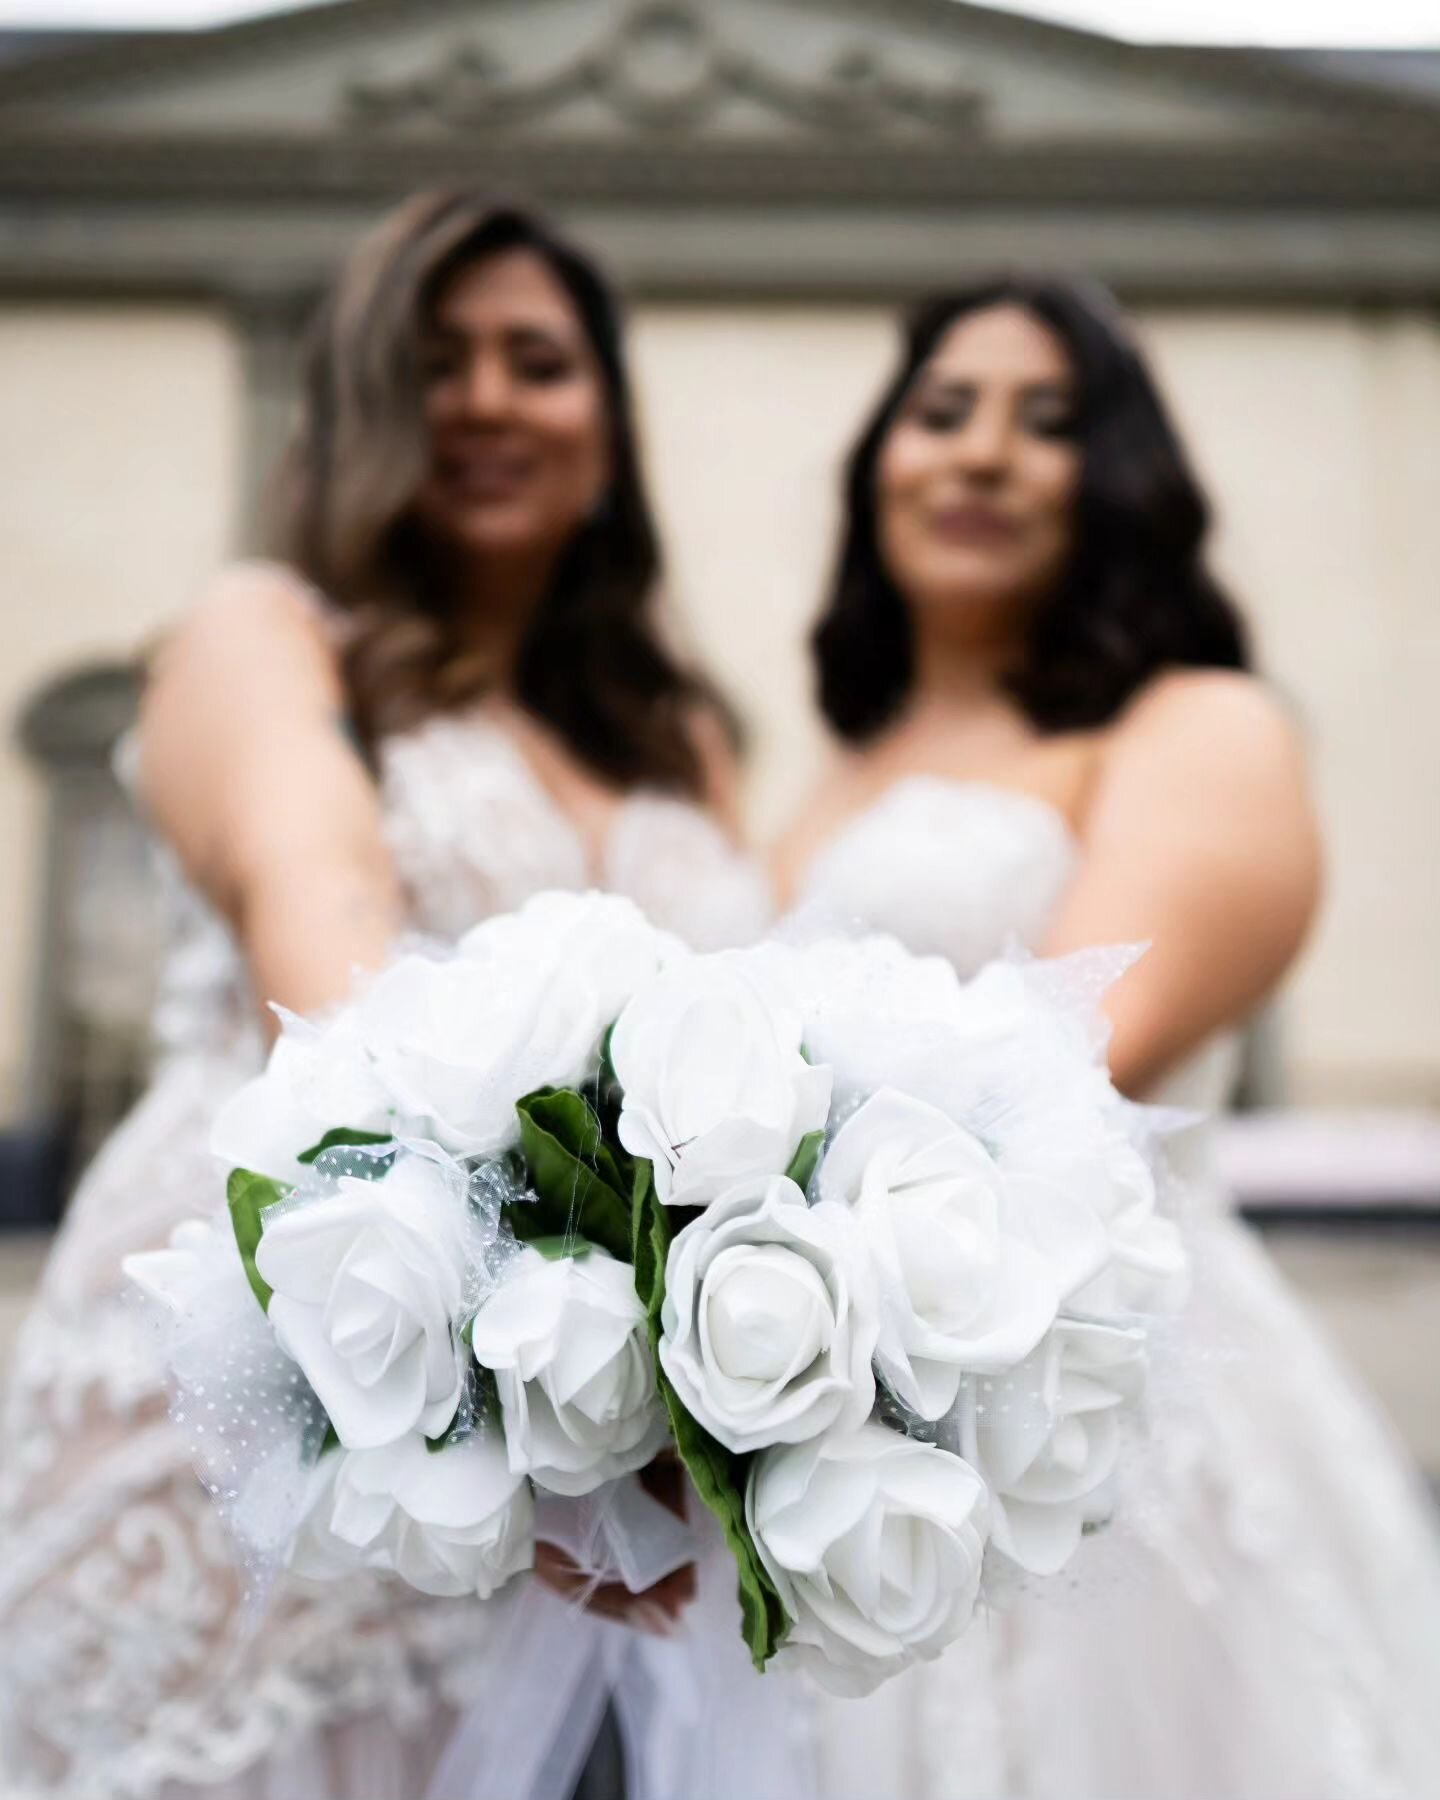 All white wedding😍😍

#love #weddings #weddingphotography